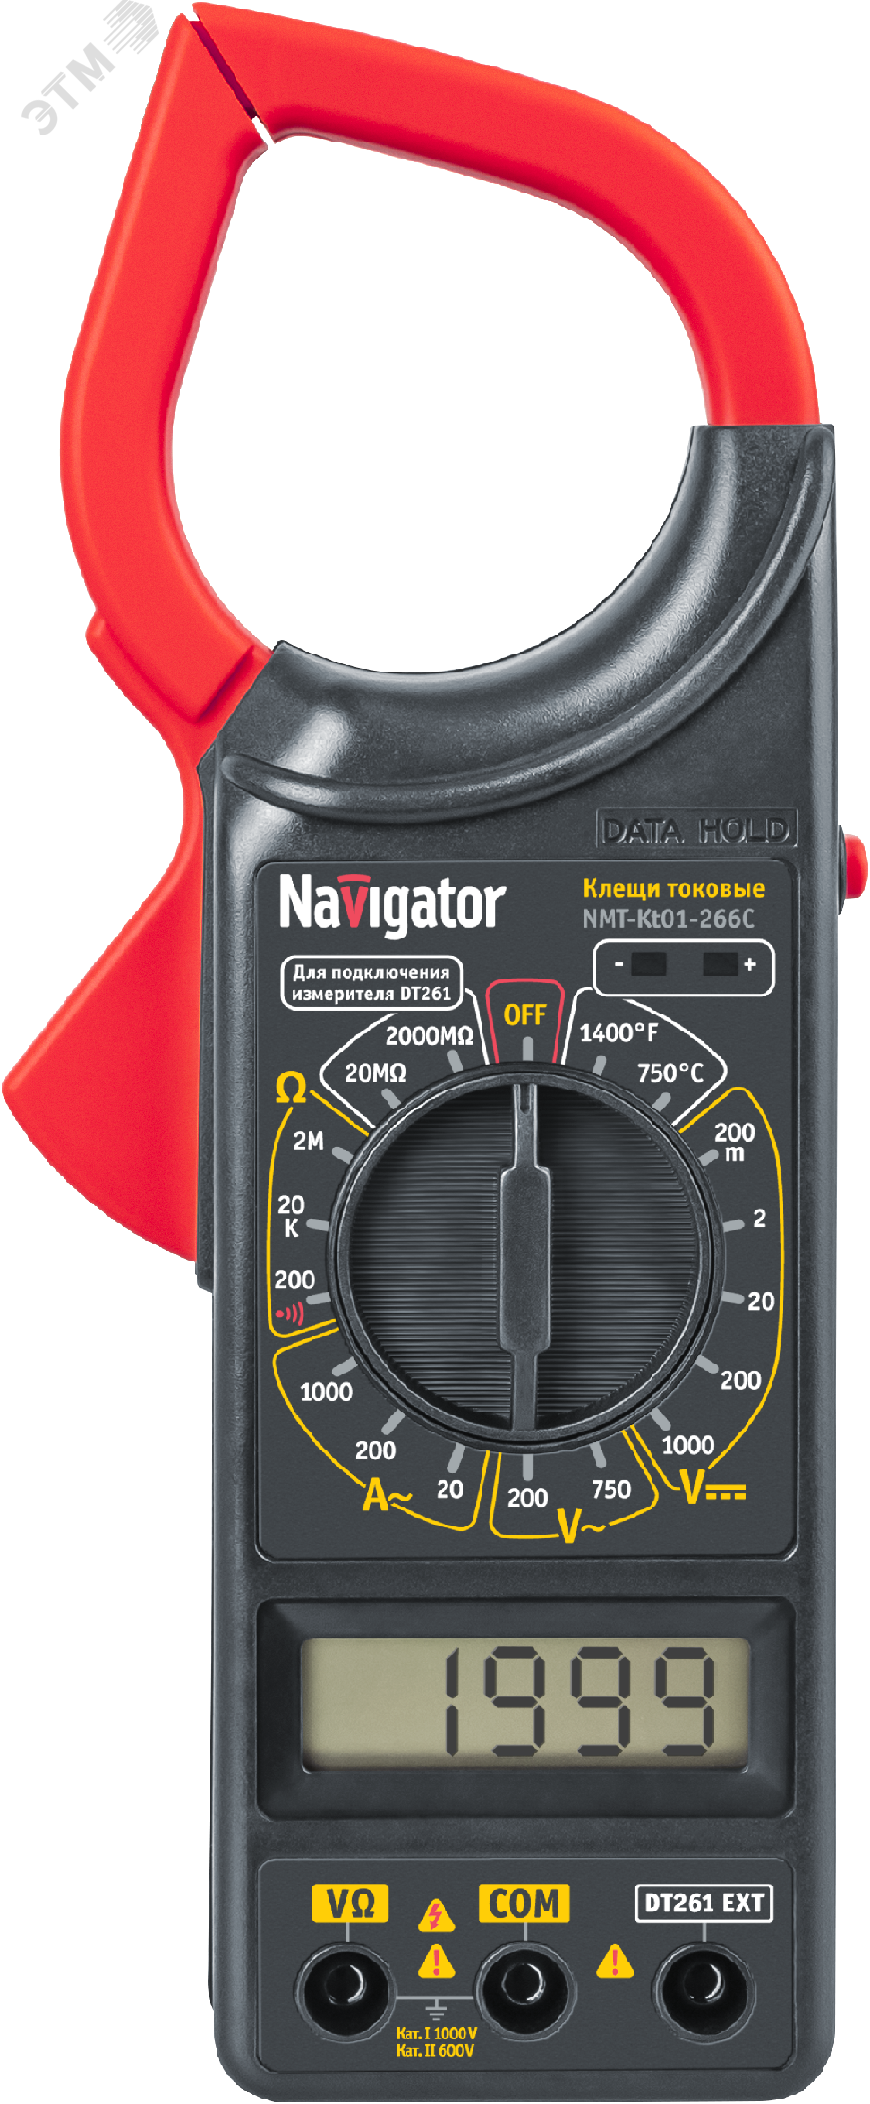 Клещи токовые 80 263 NMT-Kt01-266C (266C) 80263 Navigator Group